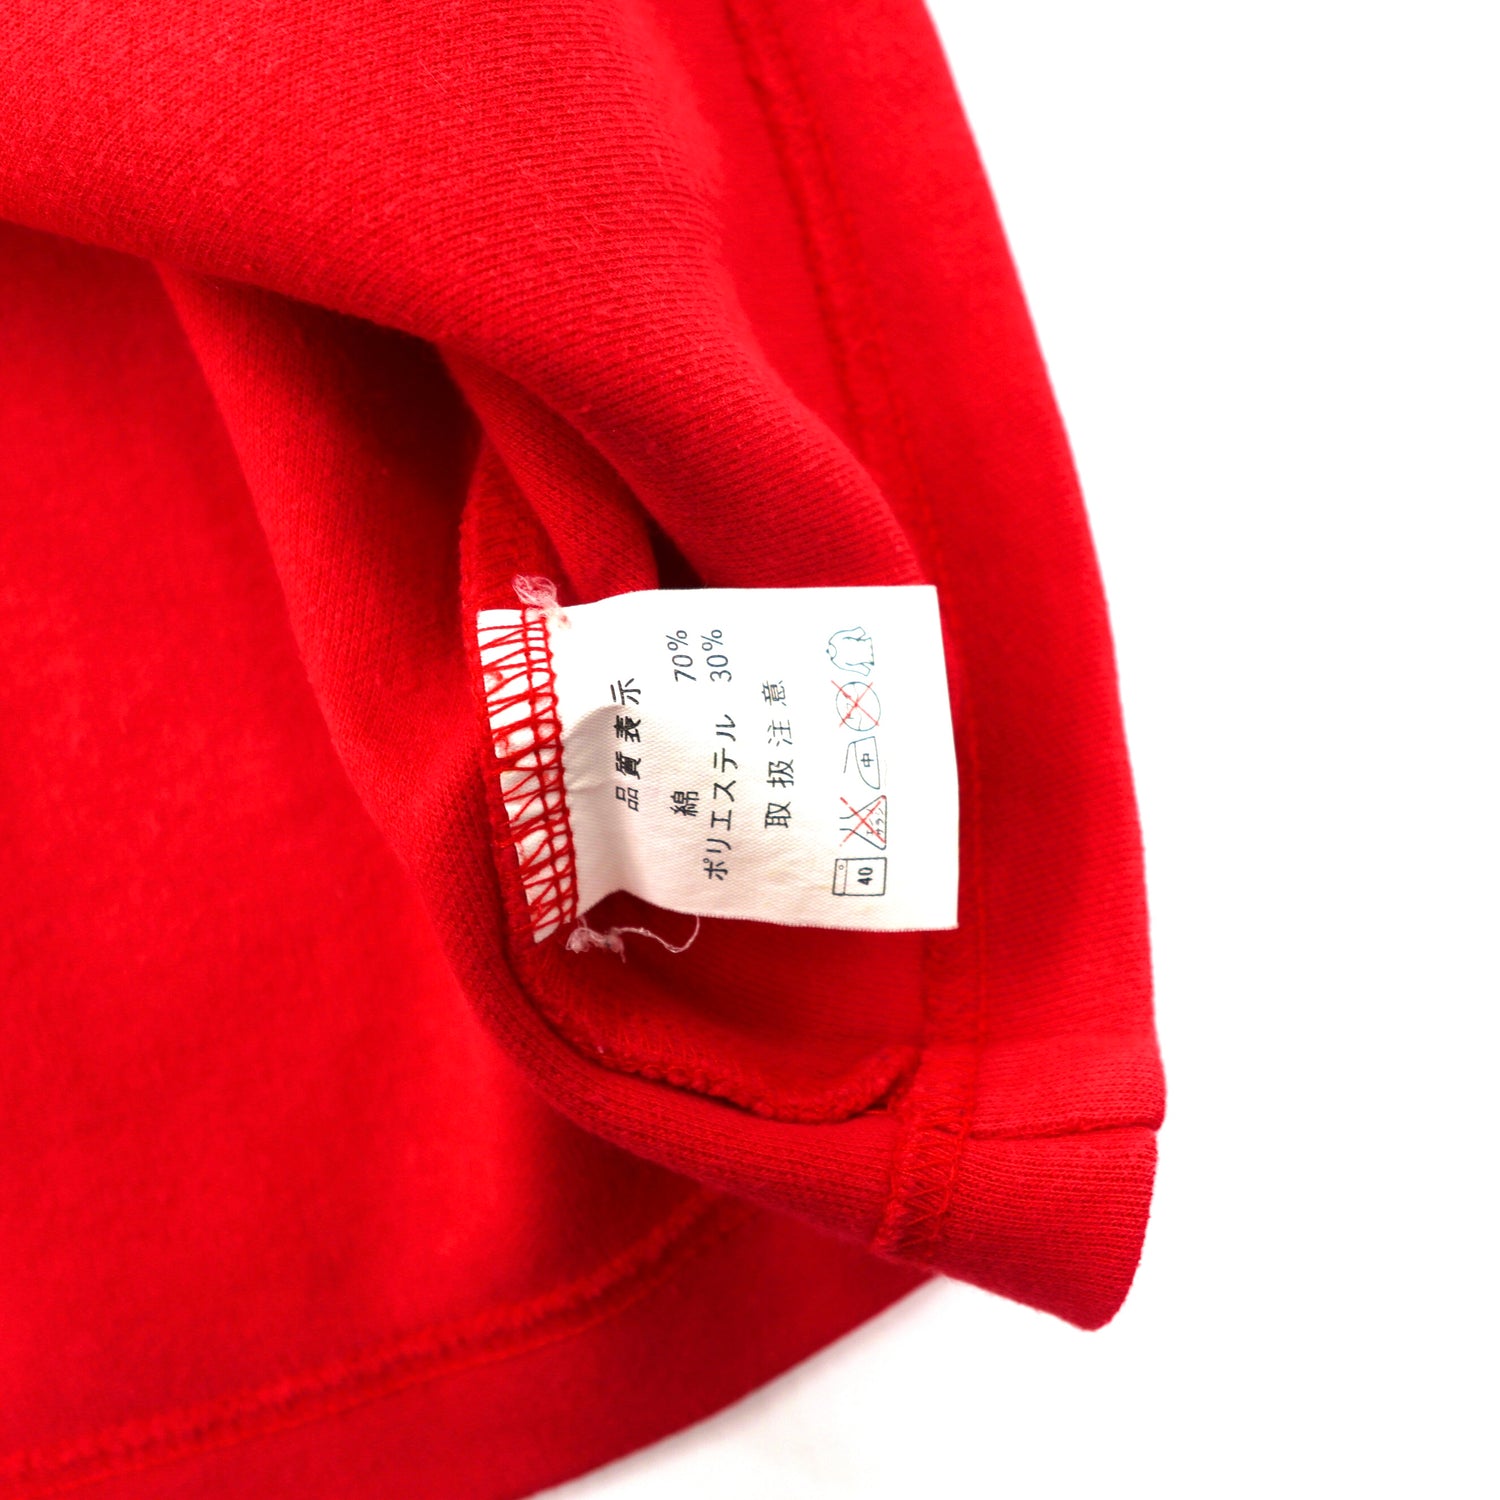 Kansai Sports V -neck Sweatshirt M Red Cotton Yamamoto Kansai 90s